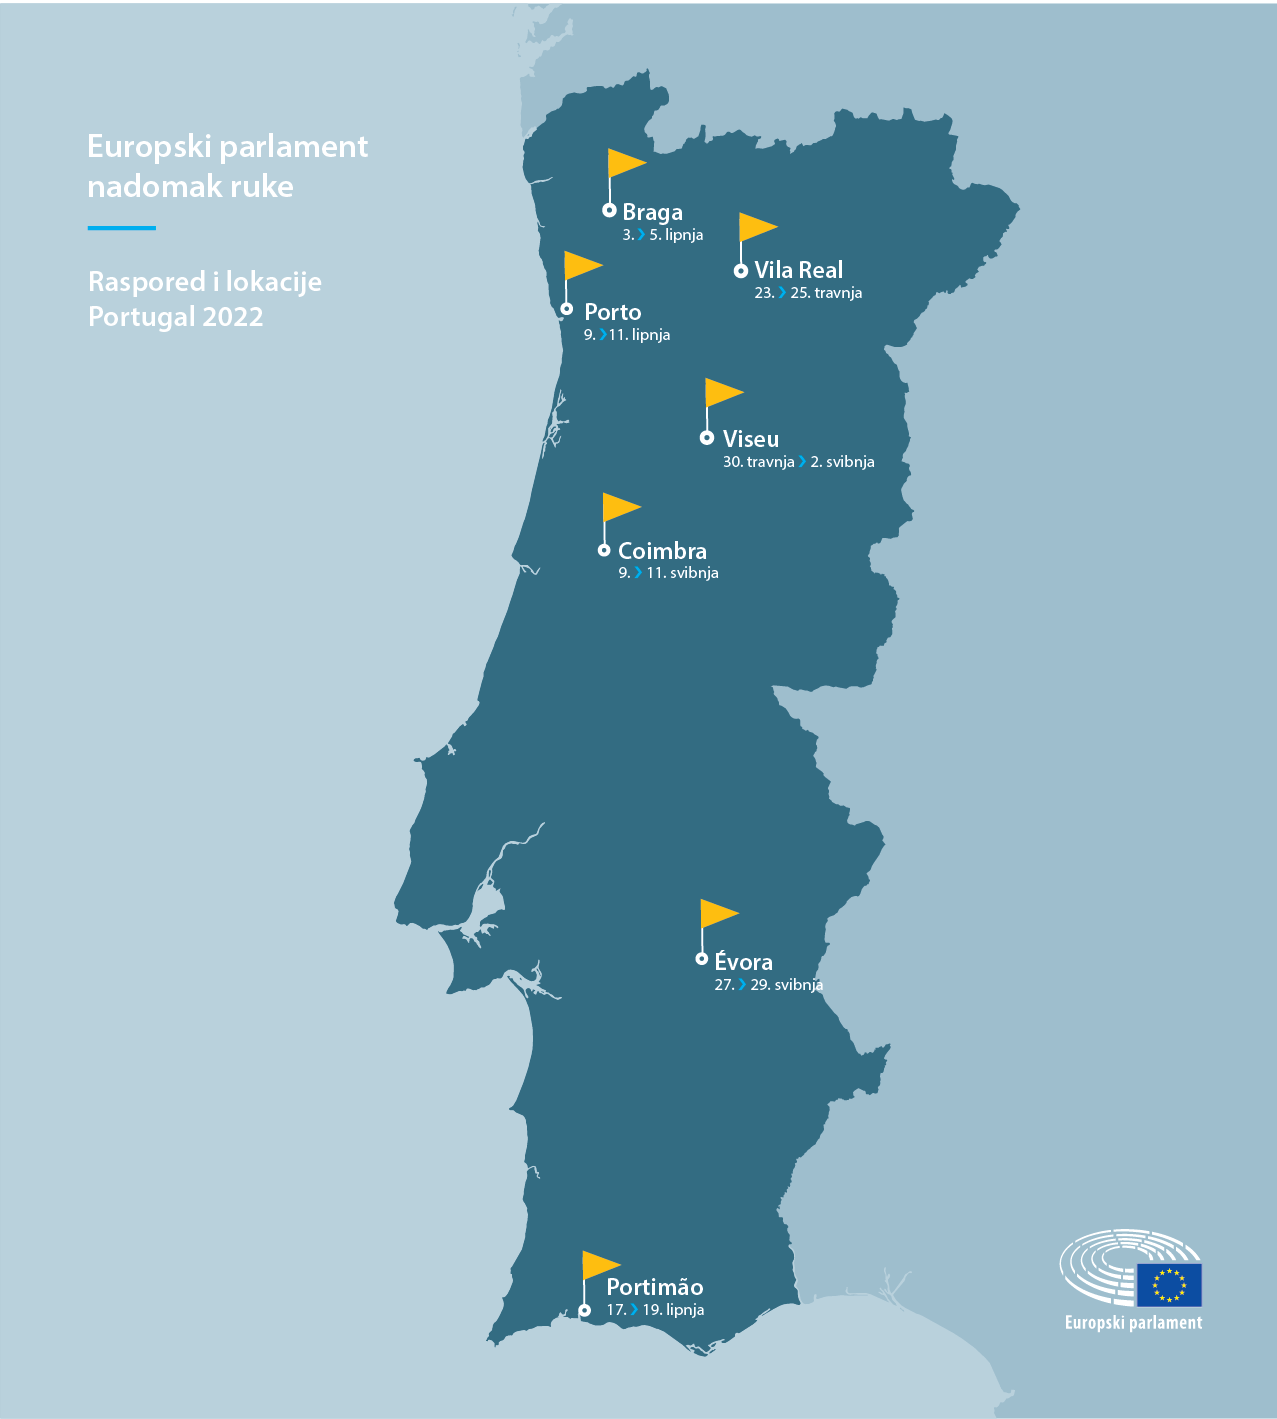 Raspored i lokacije – Portugal 2022